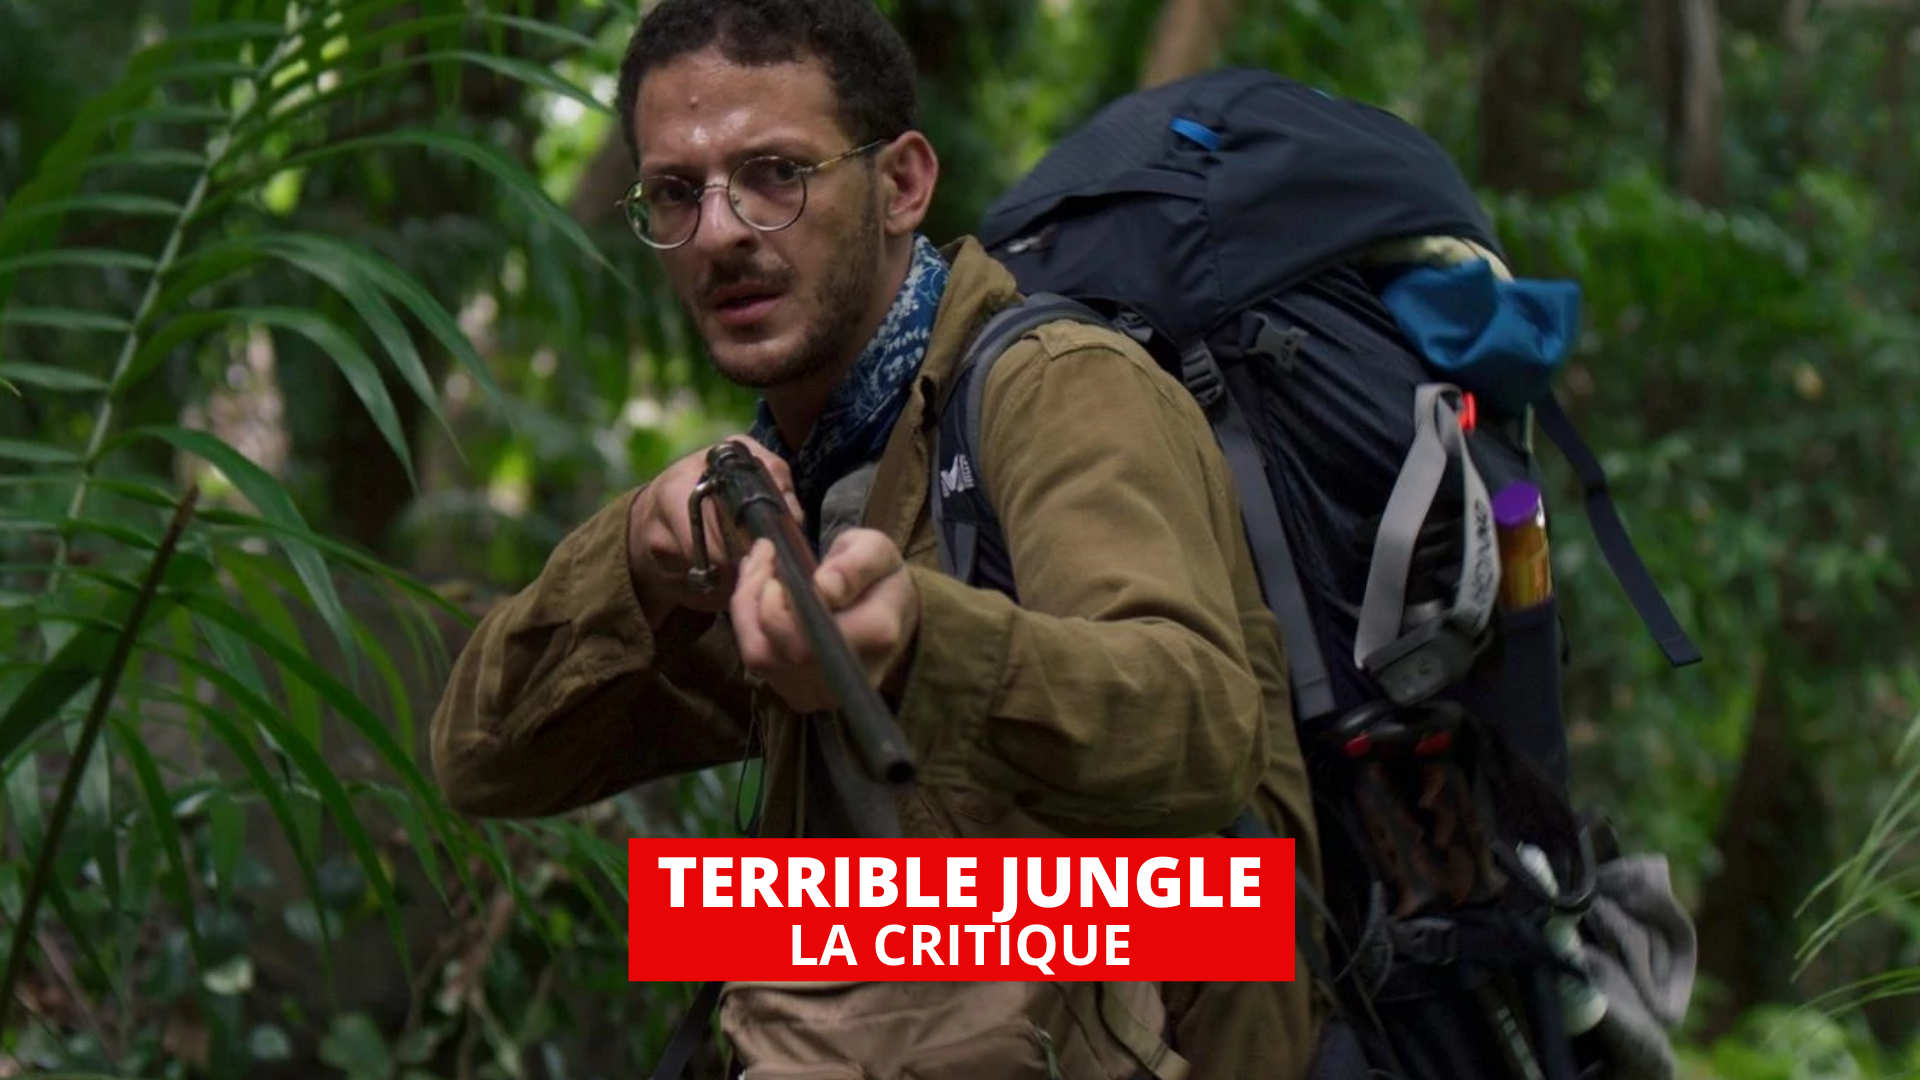 Critique de Terrible jungle (Film, 2020) - CinéSérie